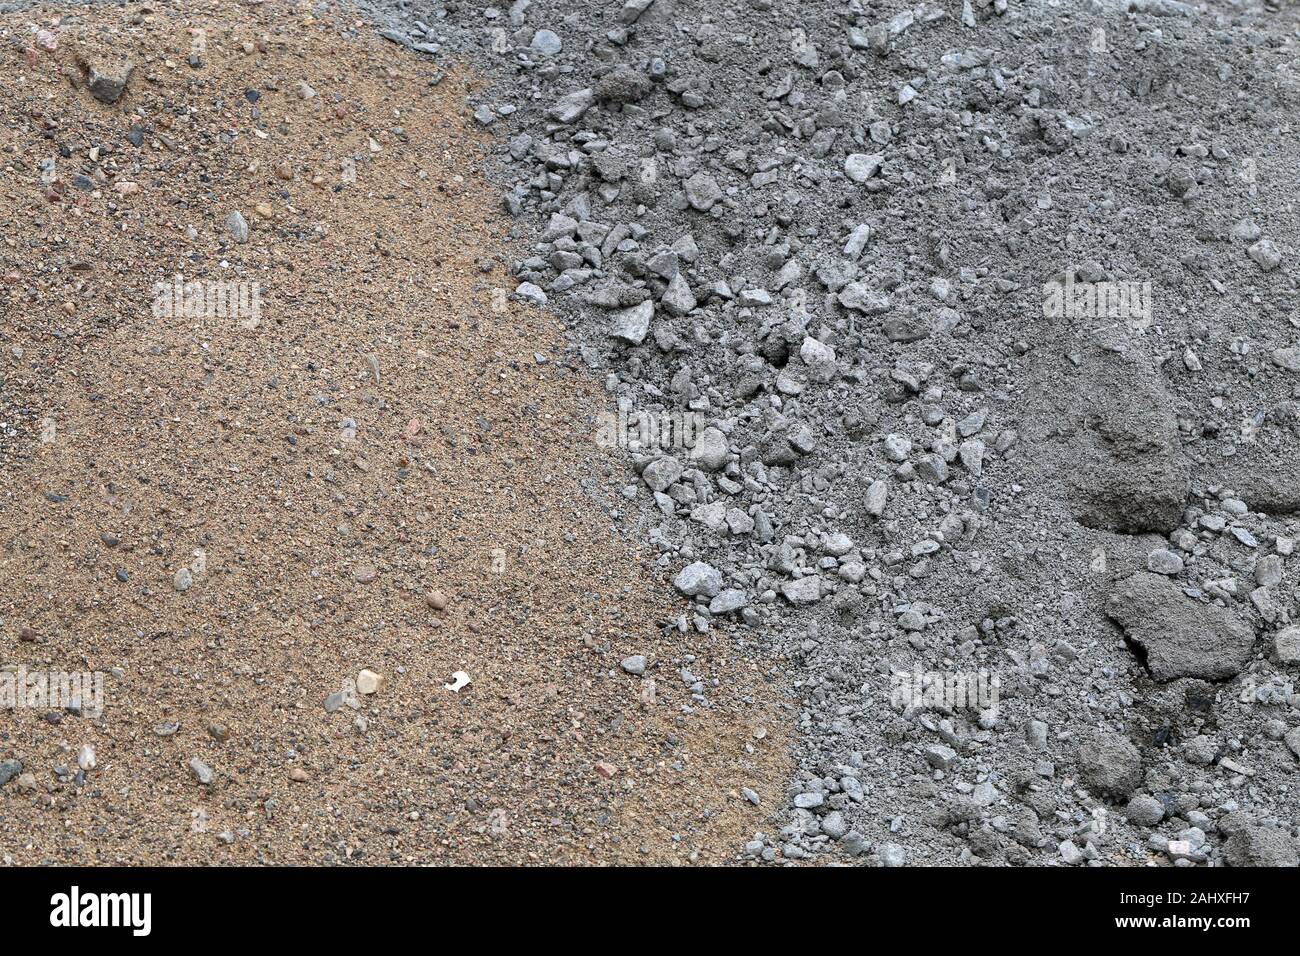 Matériaux de construction dans un chantier de construction. Sur cette photo vous pouvez voir le sable brun et gris gris Matériau pierre concassée. Libre image couleur. Banque D'Images